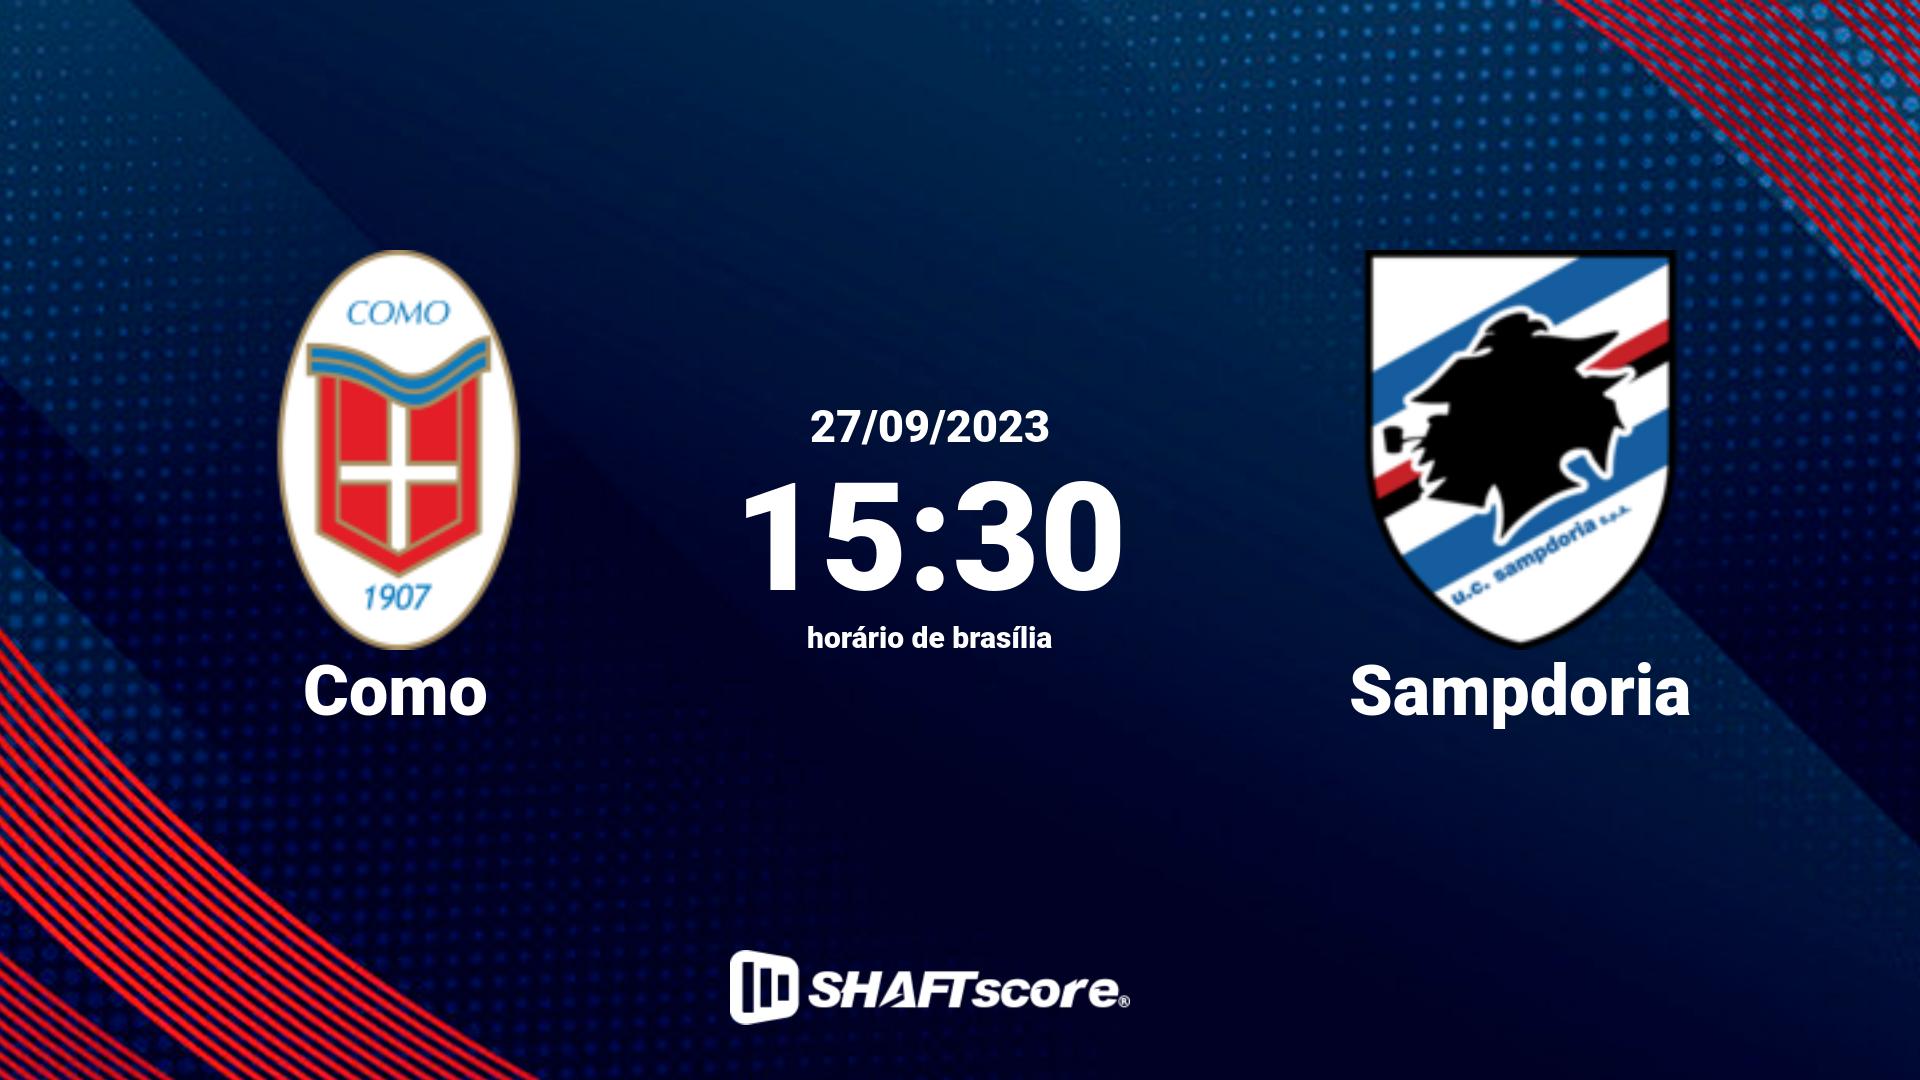 Estatísticas do jogo Como vs Sampdoria 27.09 15:30